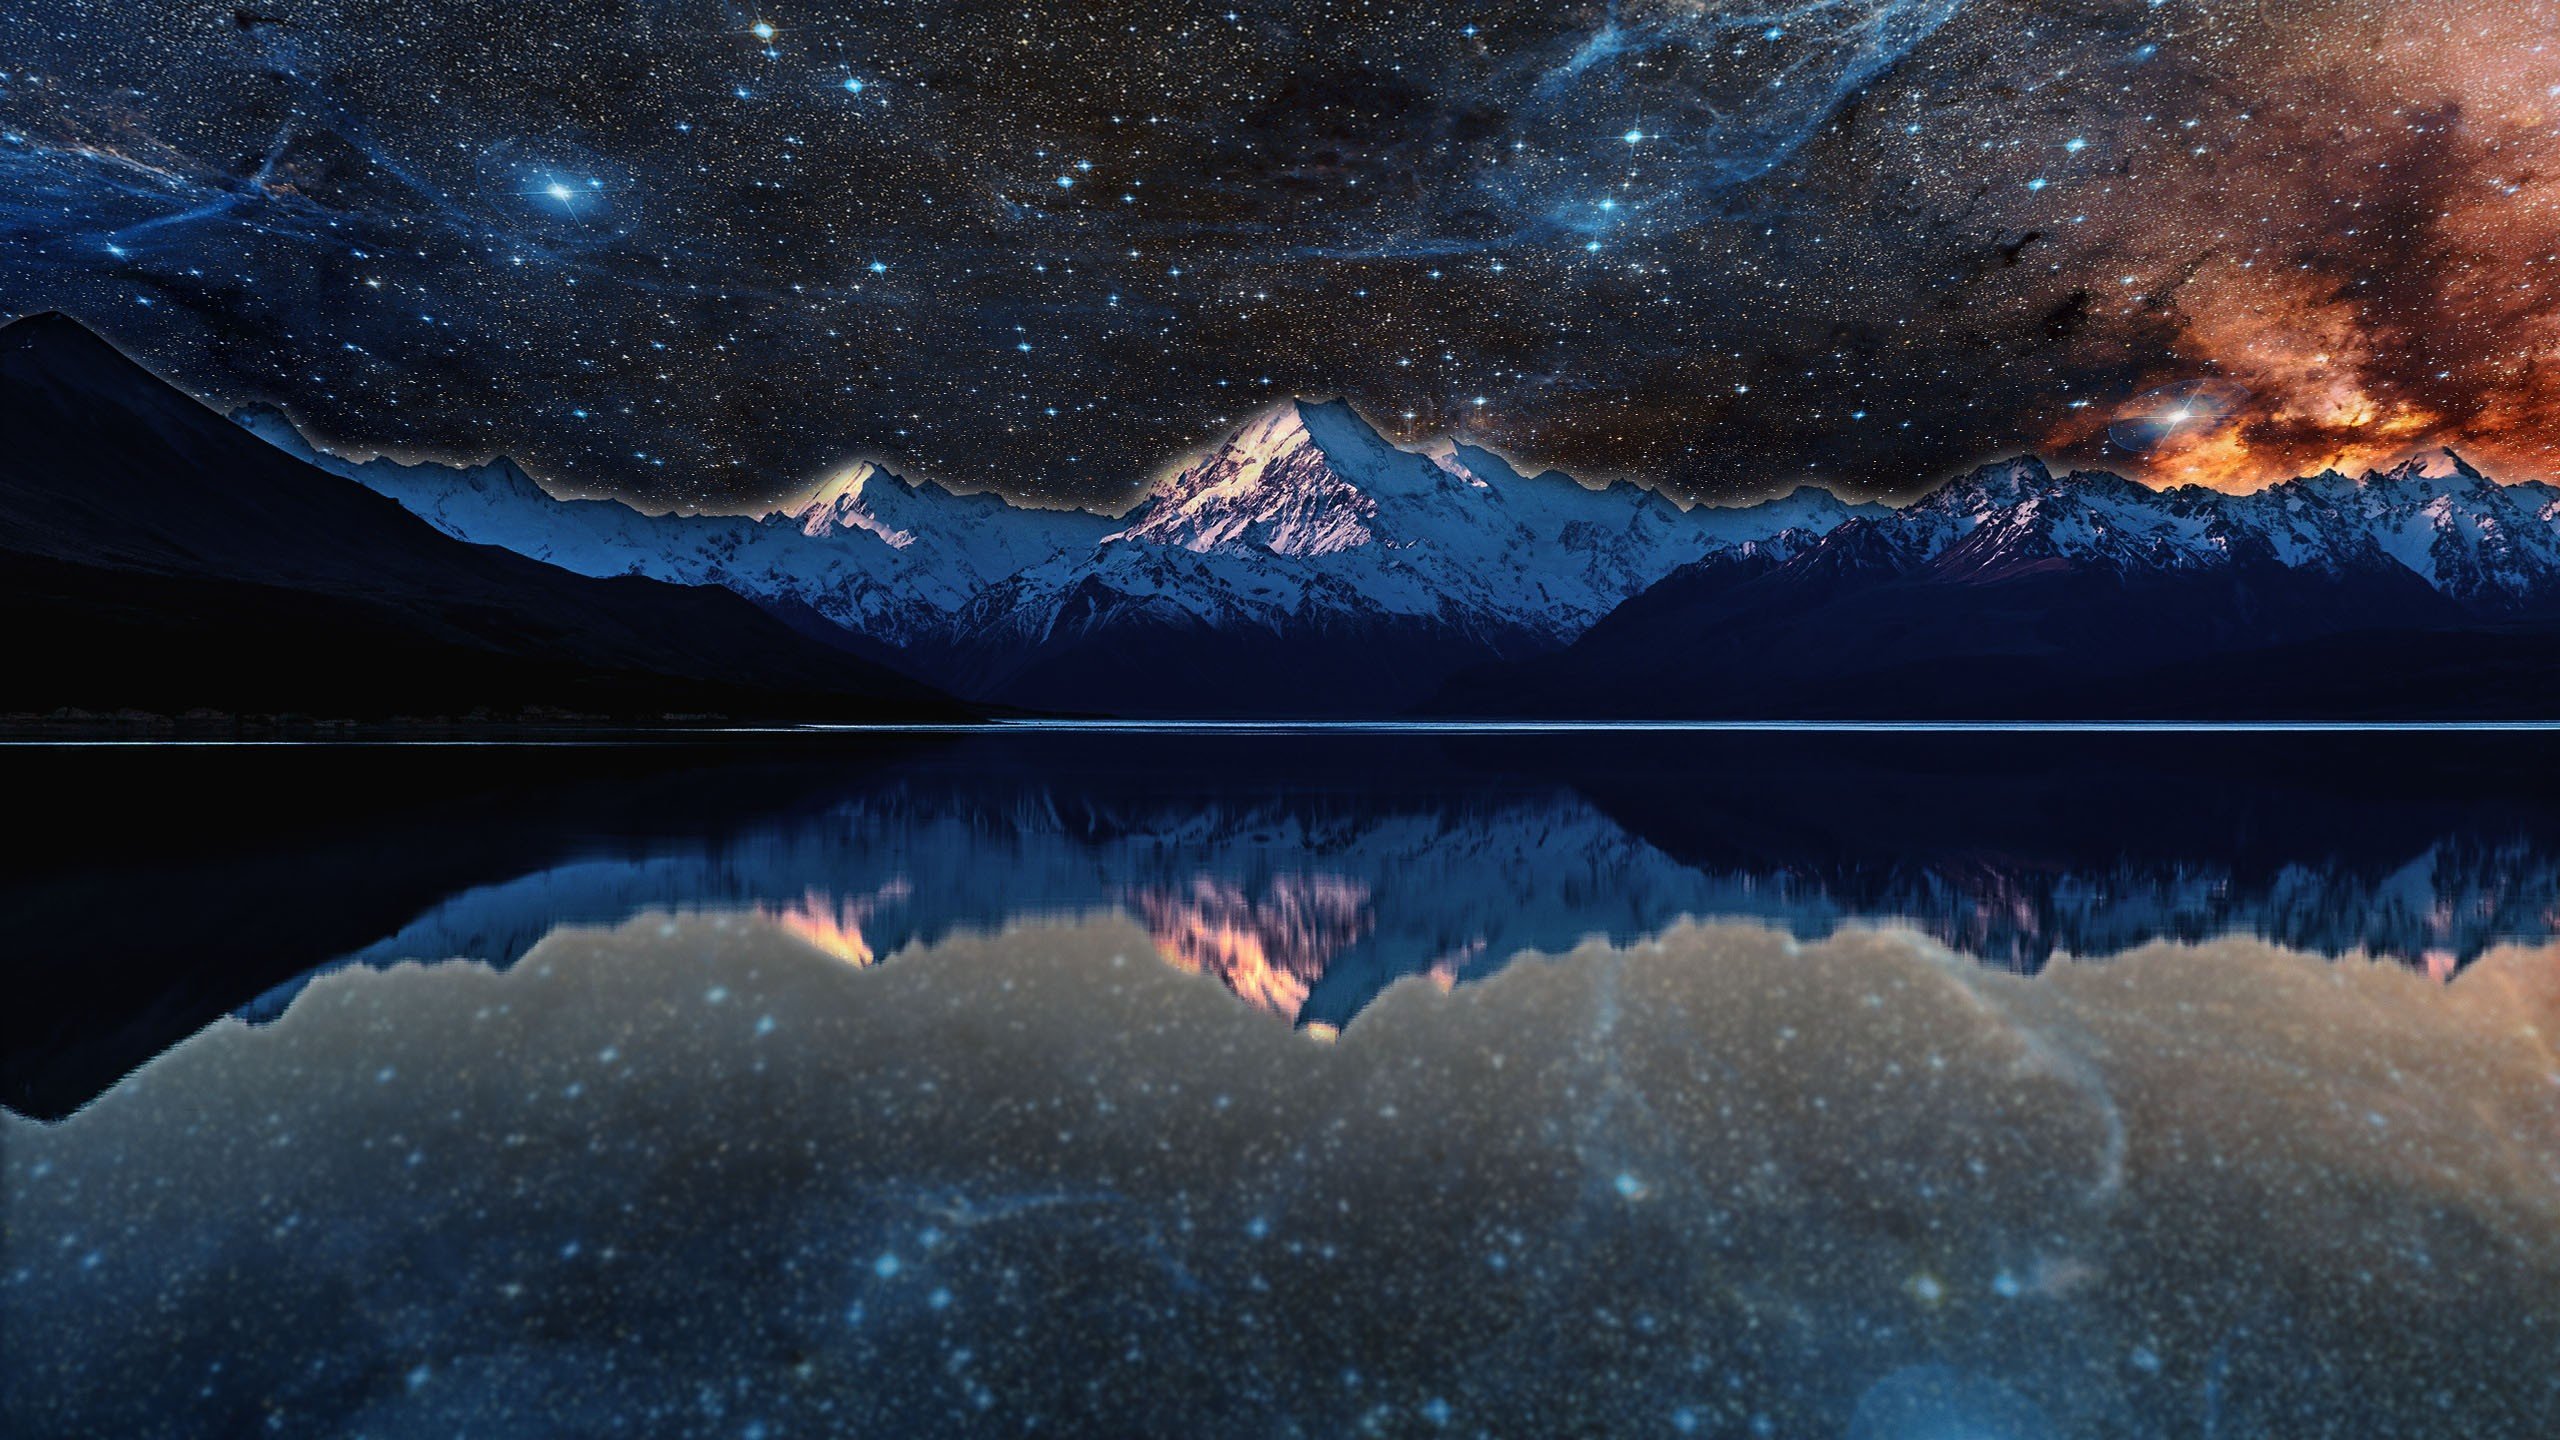 nebula, Lake, Space, Stars, Water, Reflection, Evening, Photo manipulation Wallpaper